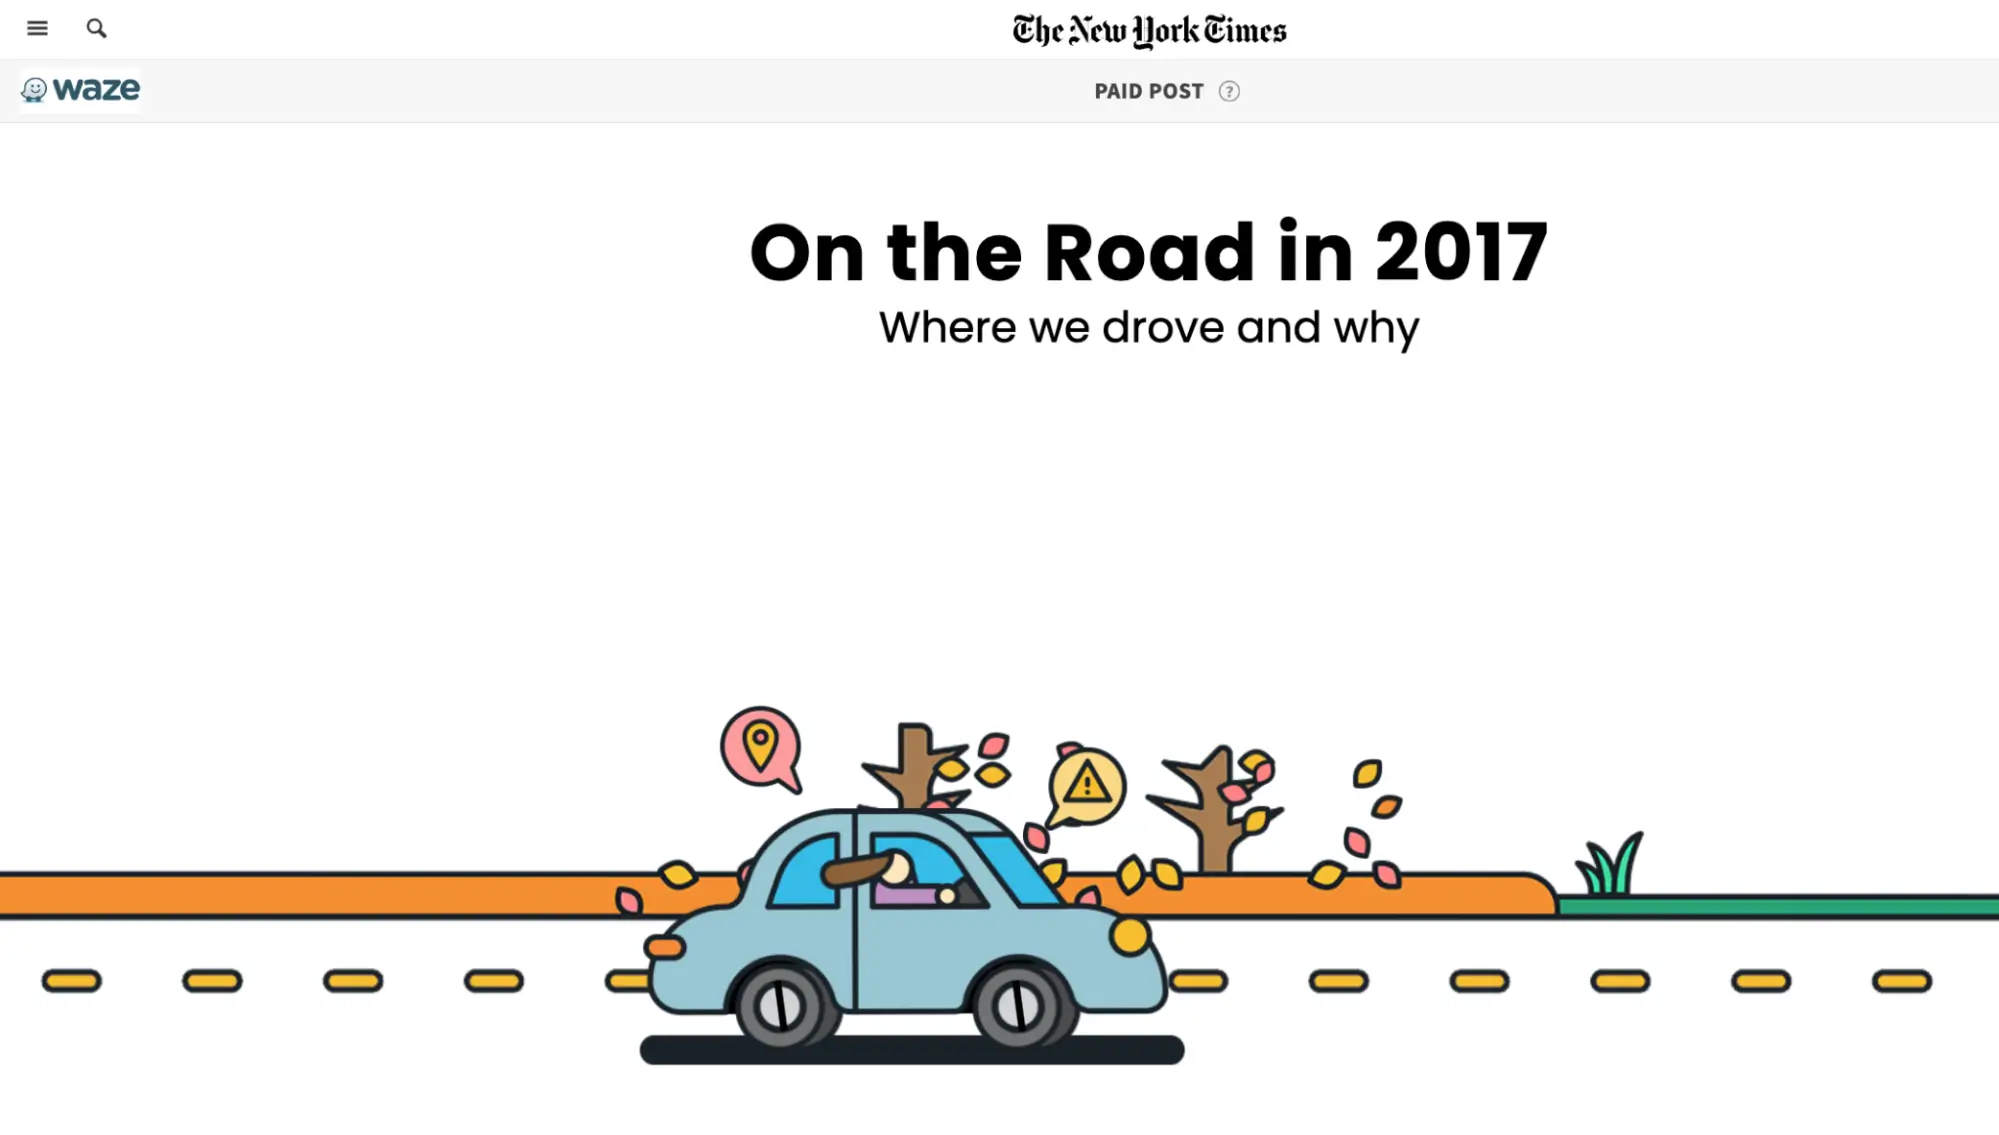 ภาพนี้แสดงแคมเปญ "On the Road" ของ Waze ที่สร้างขึ้นโดยความร่วมมือกับ New York Times โดยมีเนื้อหาเชิงโต้ตอบตามข้อมูลแอปจริง แคมเปญนี้มีจุดมุ่งหมายเพื่อเปิดเผยแนวโน้มและเหตุผลที่อยู่เบื้องหลัง โดยนำเสนอเนื้อหาที่ให้ข้อมูลและแบ่งปันได้ผ่านหน้าอินเทอร์แอคทีฟพร้อมกราฟิกที่สะดุดตา